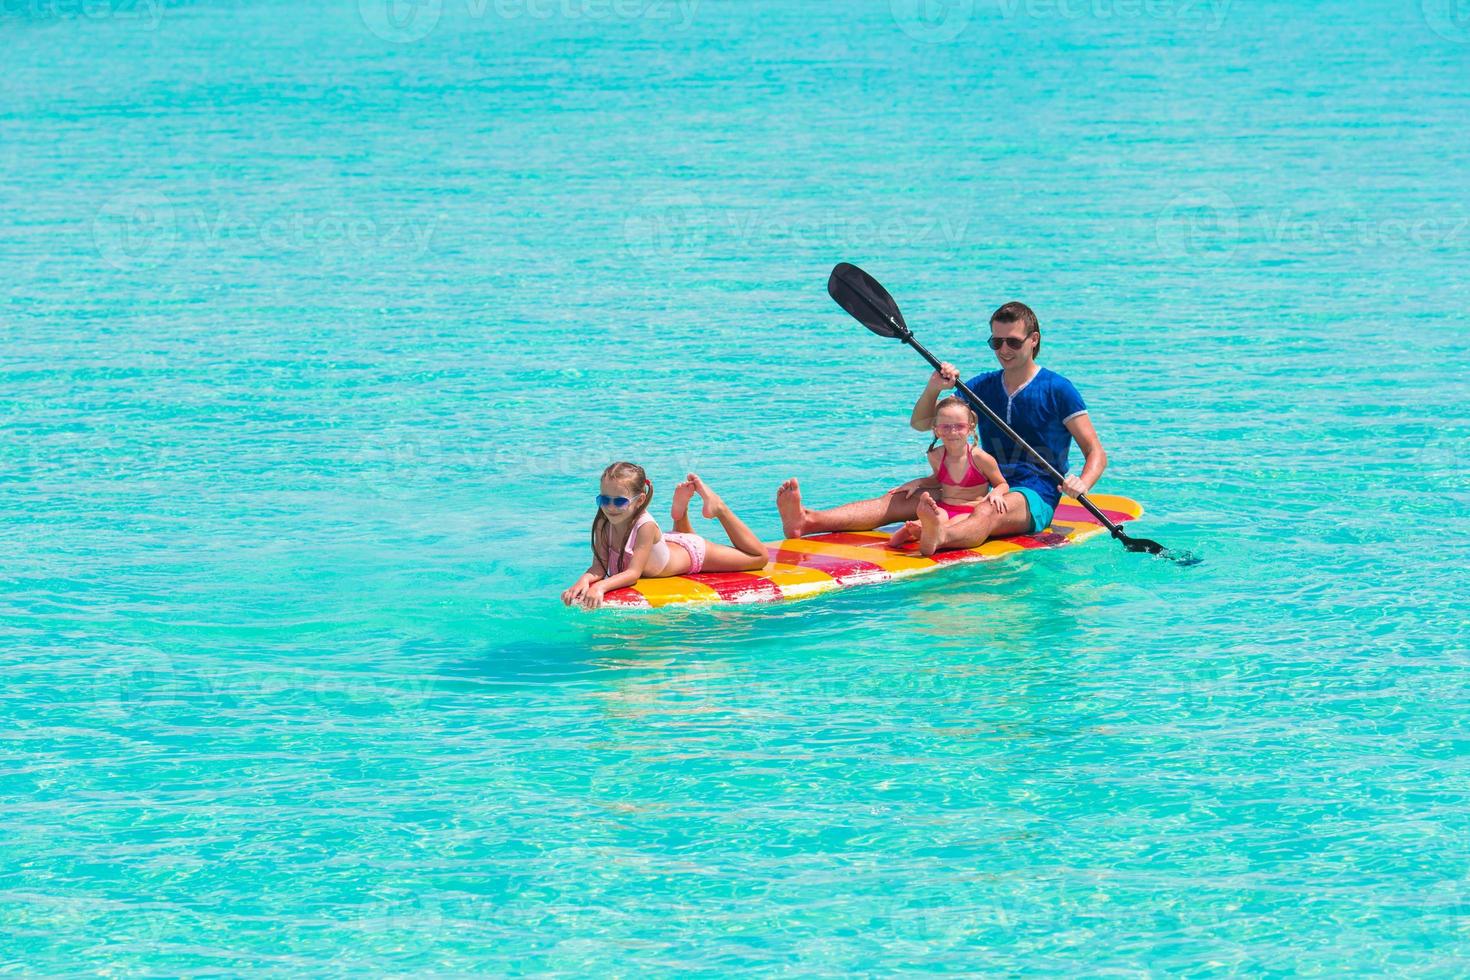 meninas e jovem pai na prancha de surf durante as férias de verão foto